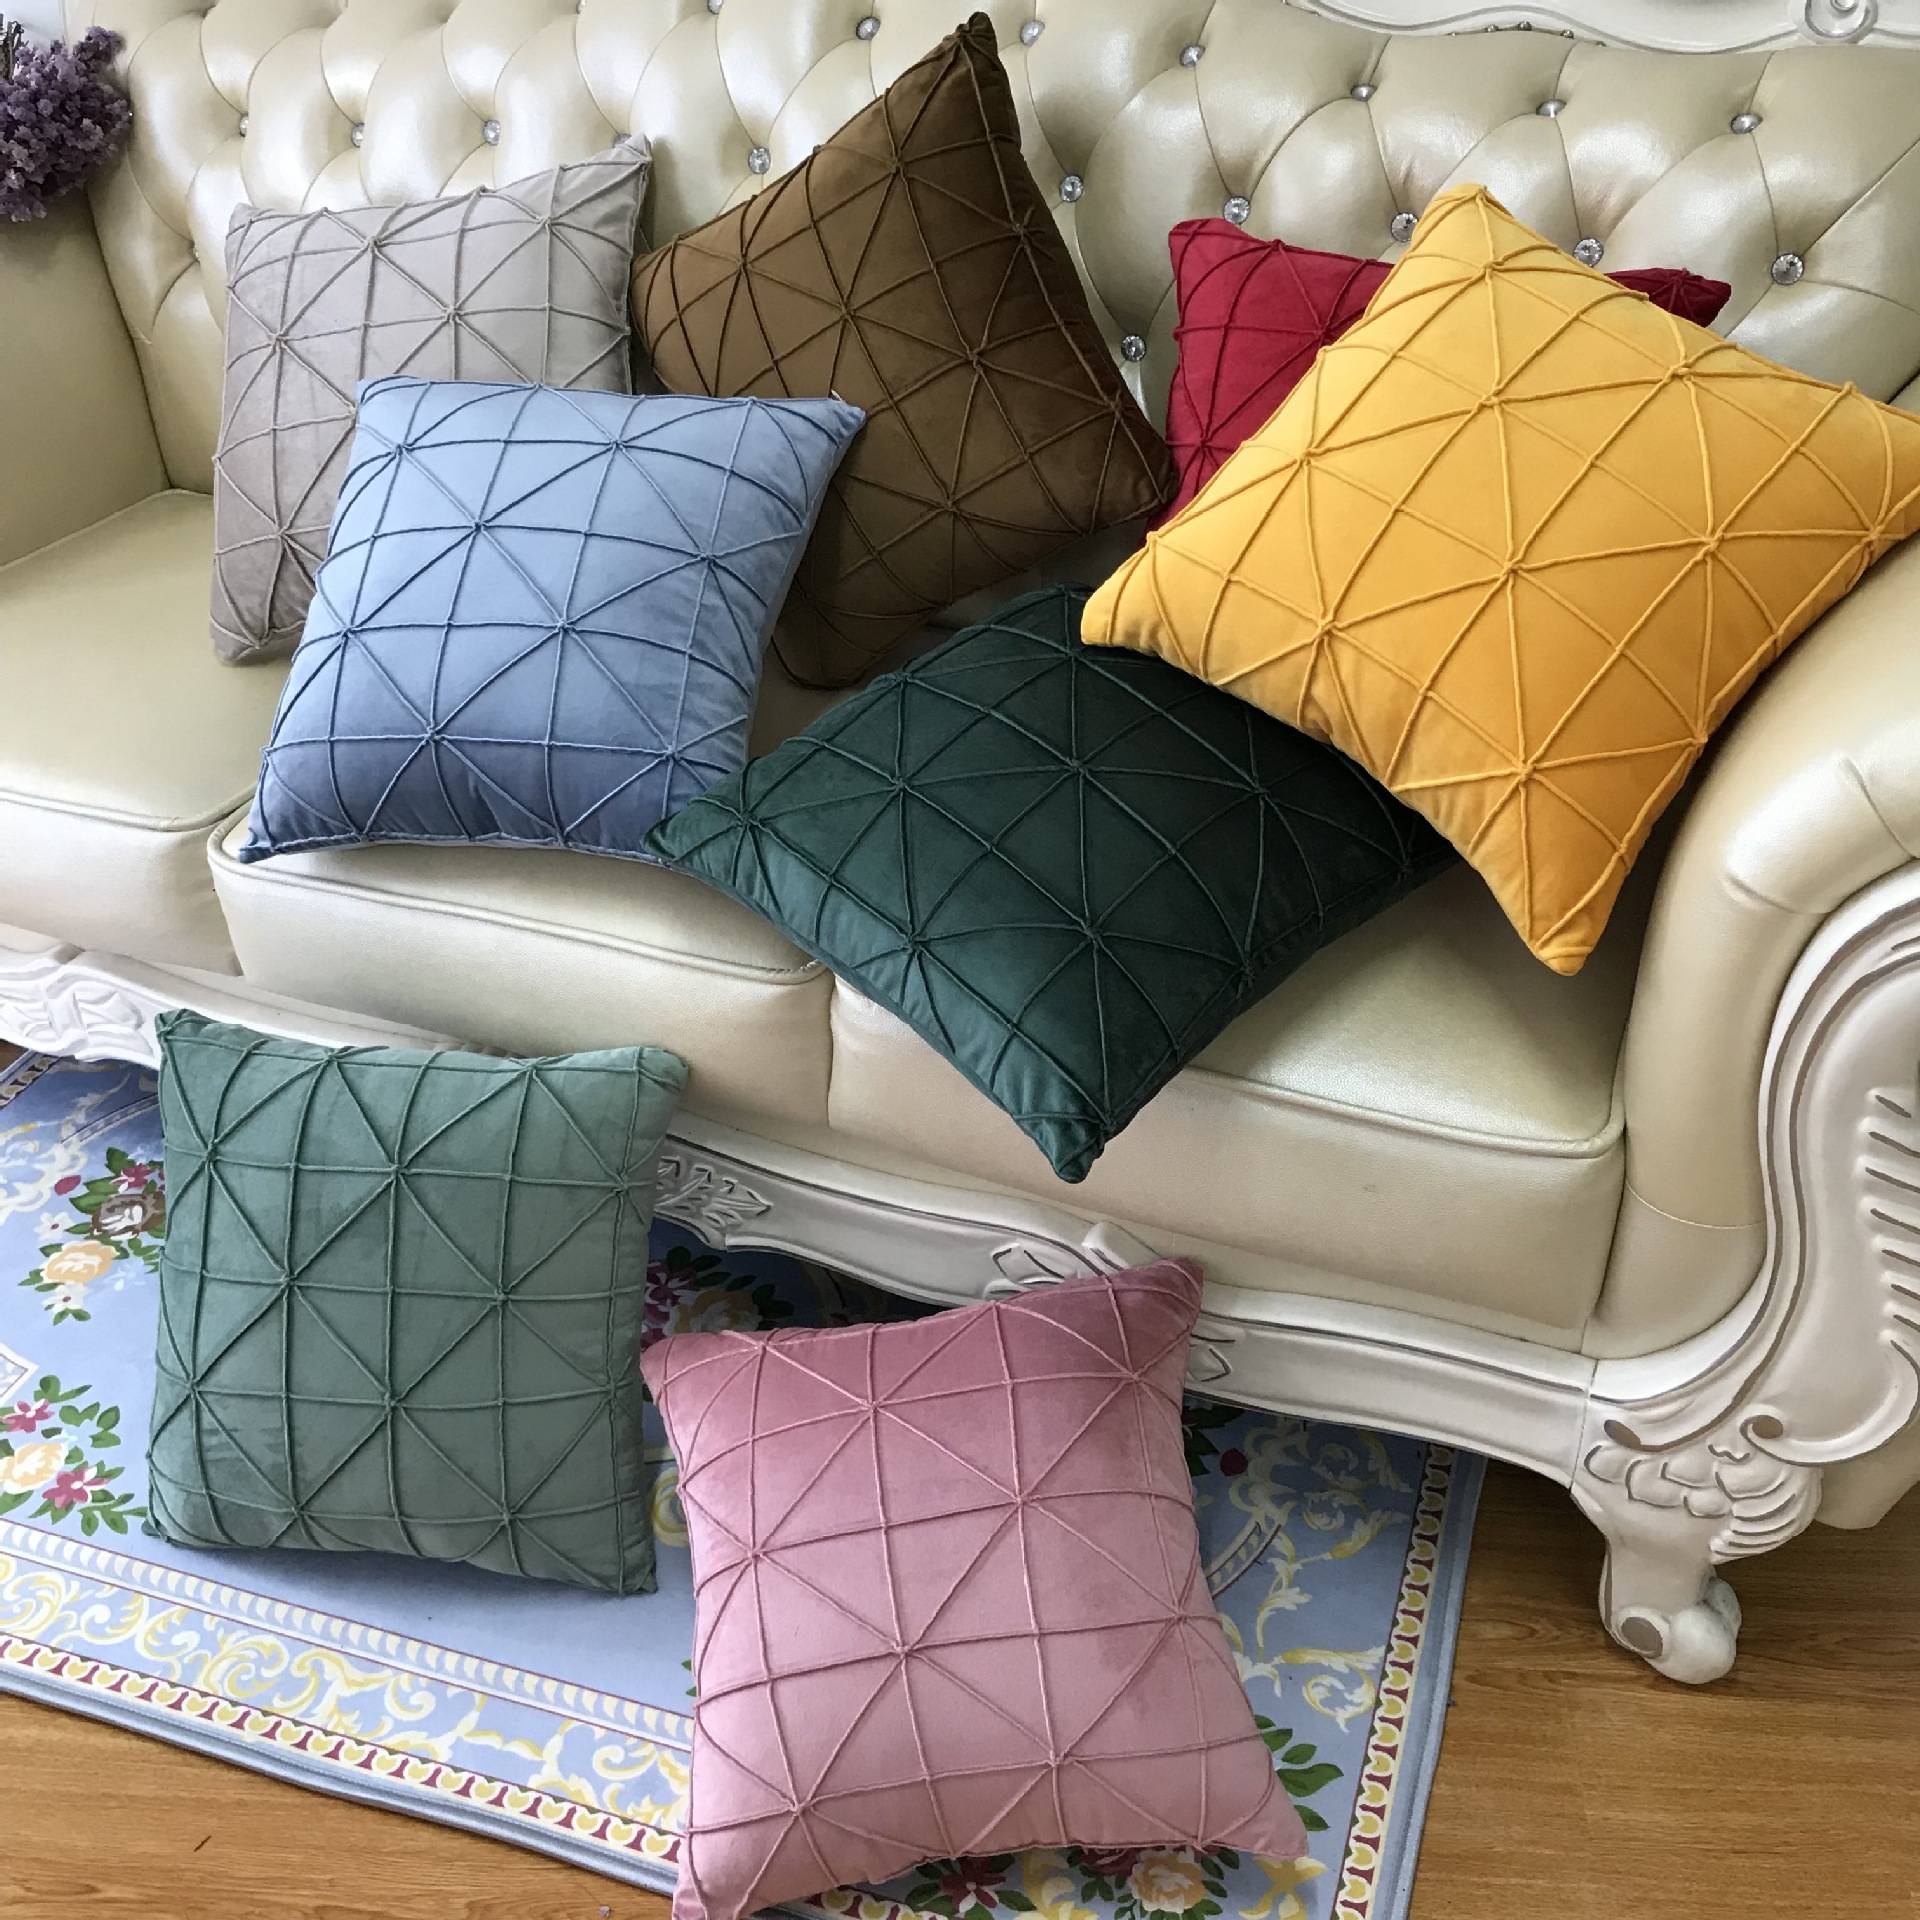 Оригинальные подушки своими руками - 70 фото идей декоративных самодельных подушек